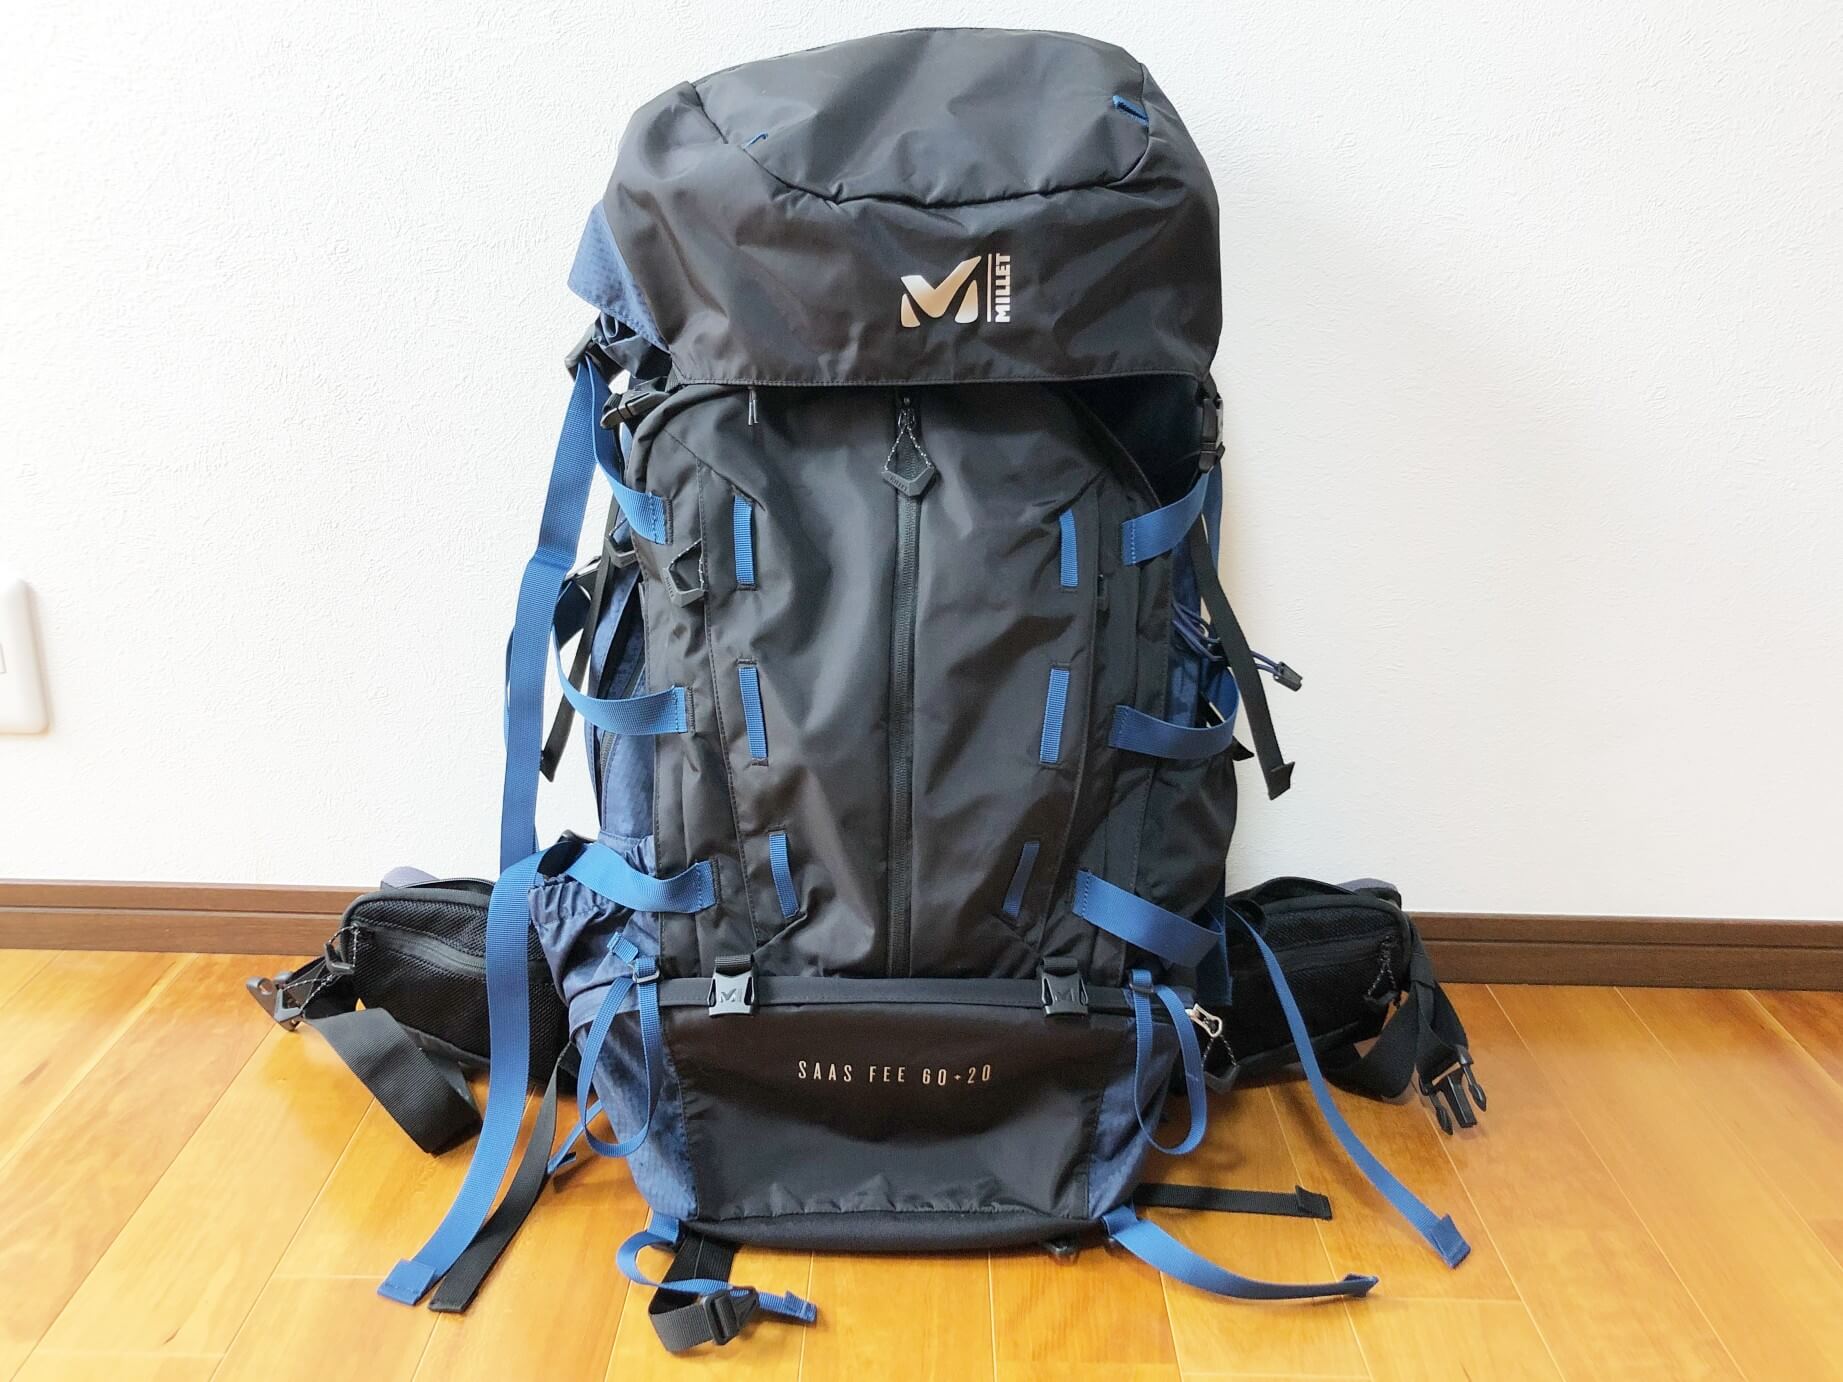 ミレー 登山バッグ 60L 20 メンズ レディース サースフェー60 20 MIS0637 MILLET 宿泊登山 バックパック バッグ